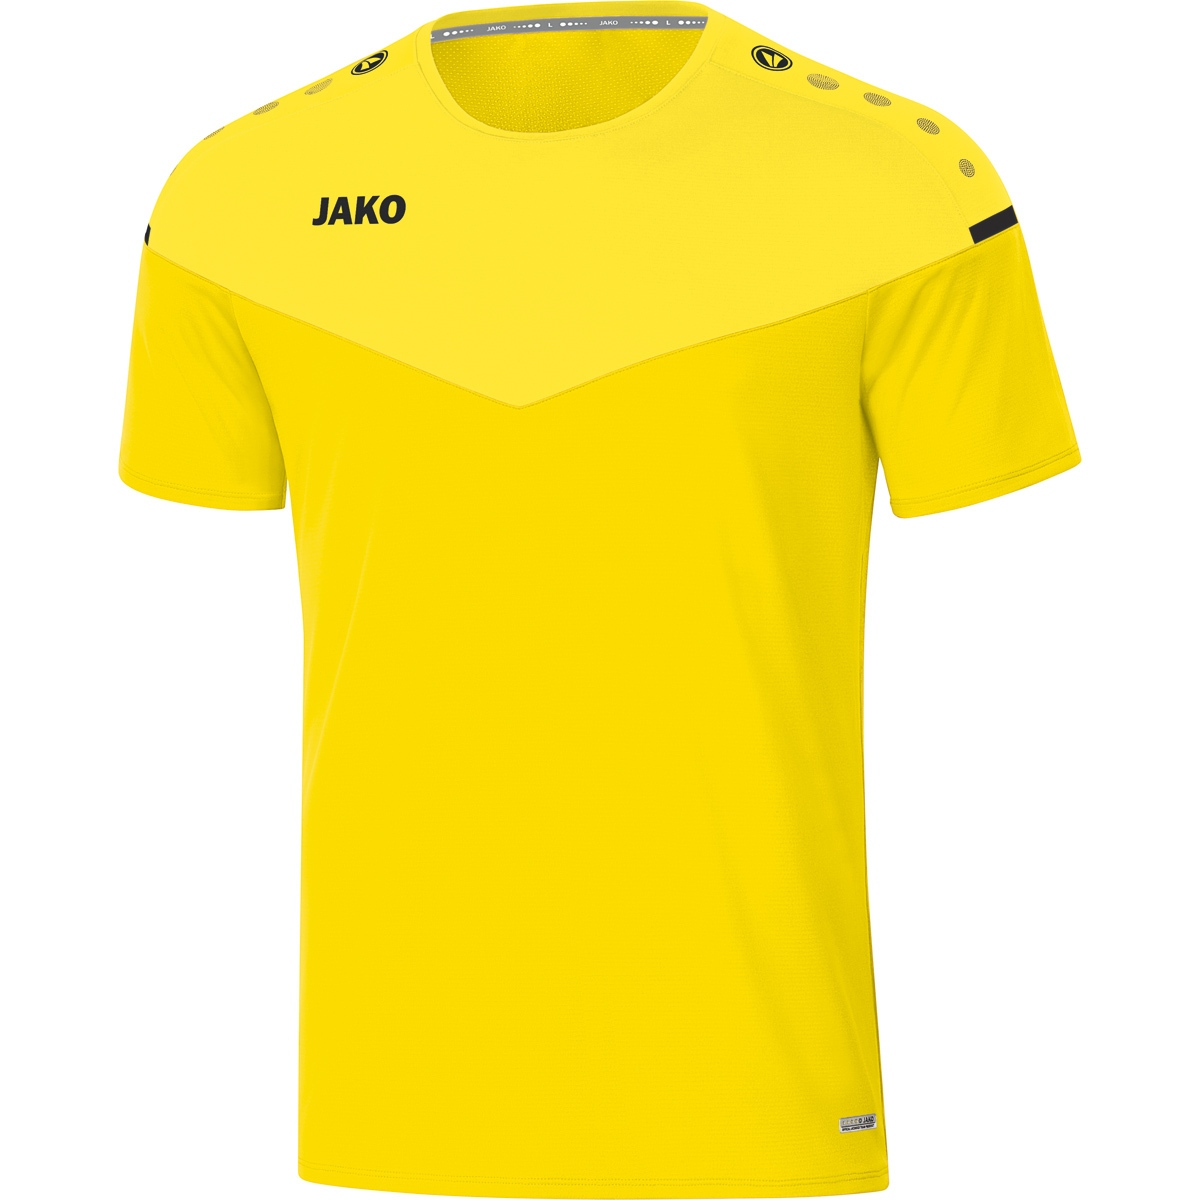 XXL, 2.0 T-Shirt citro/citro JAKO light, 6120 Gr. Herren, Champ